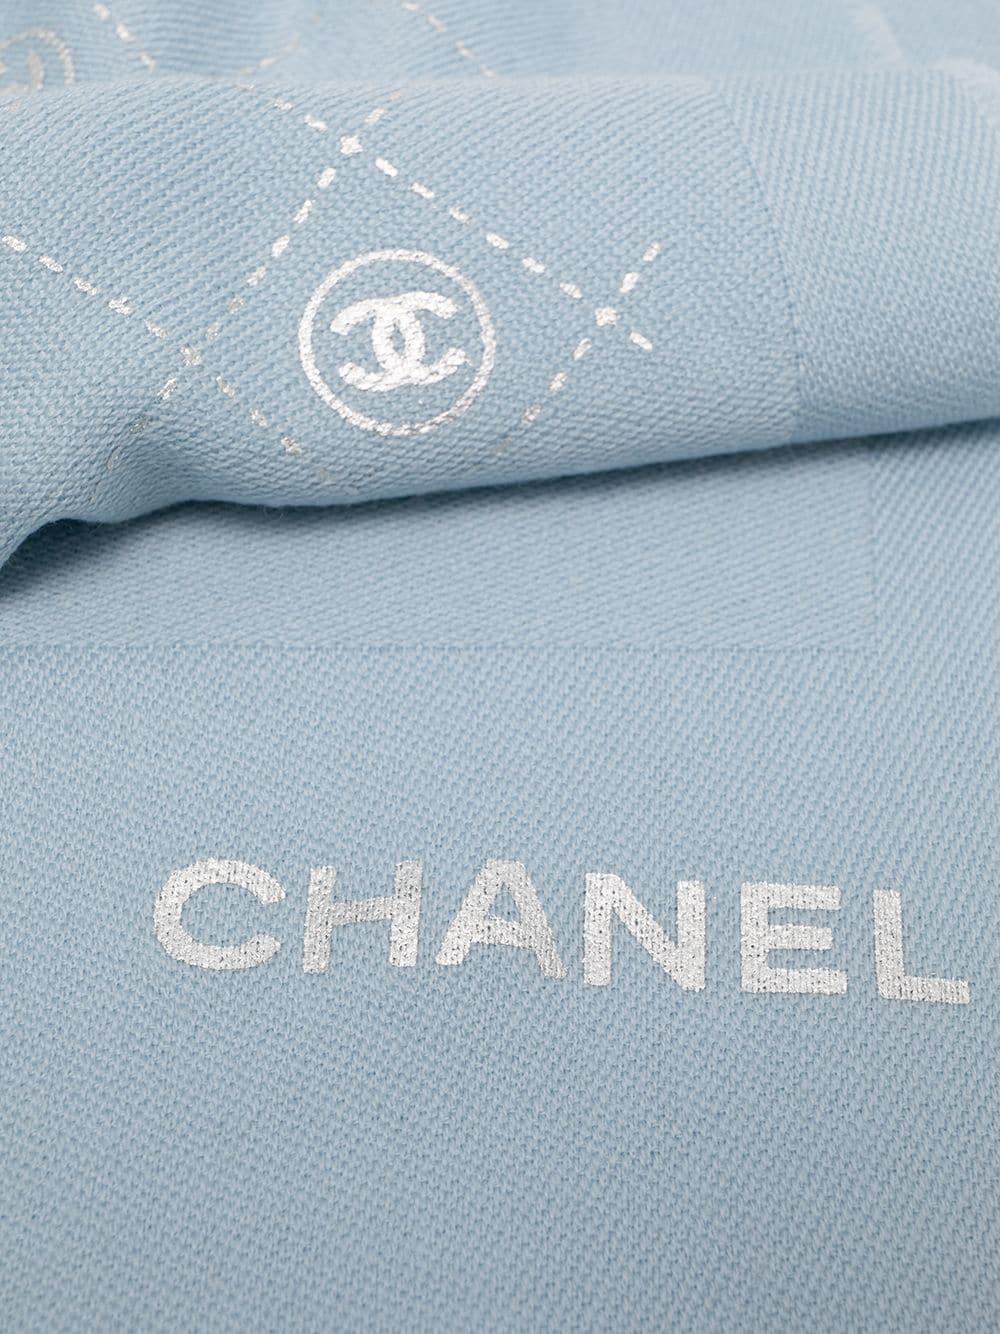 Wickeln Sie sich stilvoll und mit luxuriösem Komfort ein mit diesem atemberaubenden, aber dezenten babyblauen Schal von Chanel. Gefertigt aus 100% Wolle. 

Maße 200cm x 80cm

Farbe: Babyblau

Zusammensetzung: 100% Wolle

Zustand: Ausgezeichneter